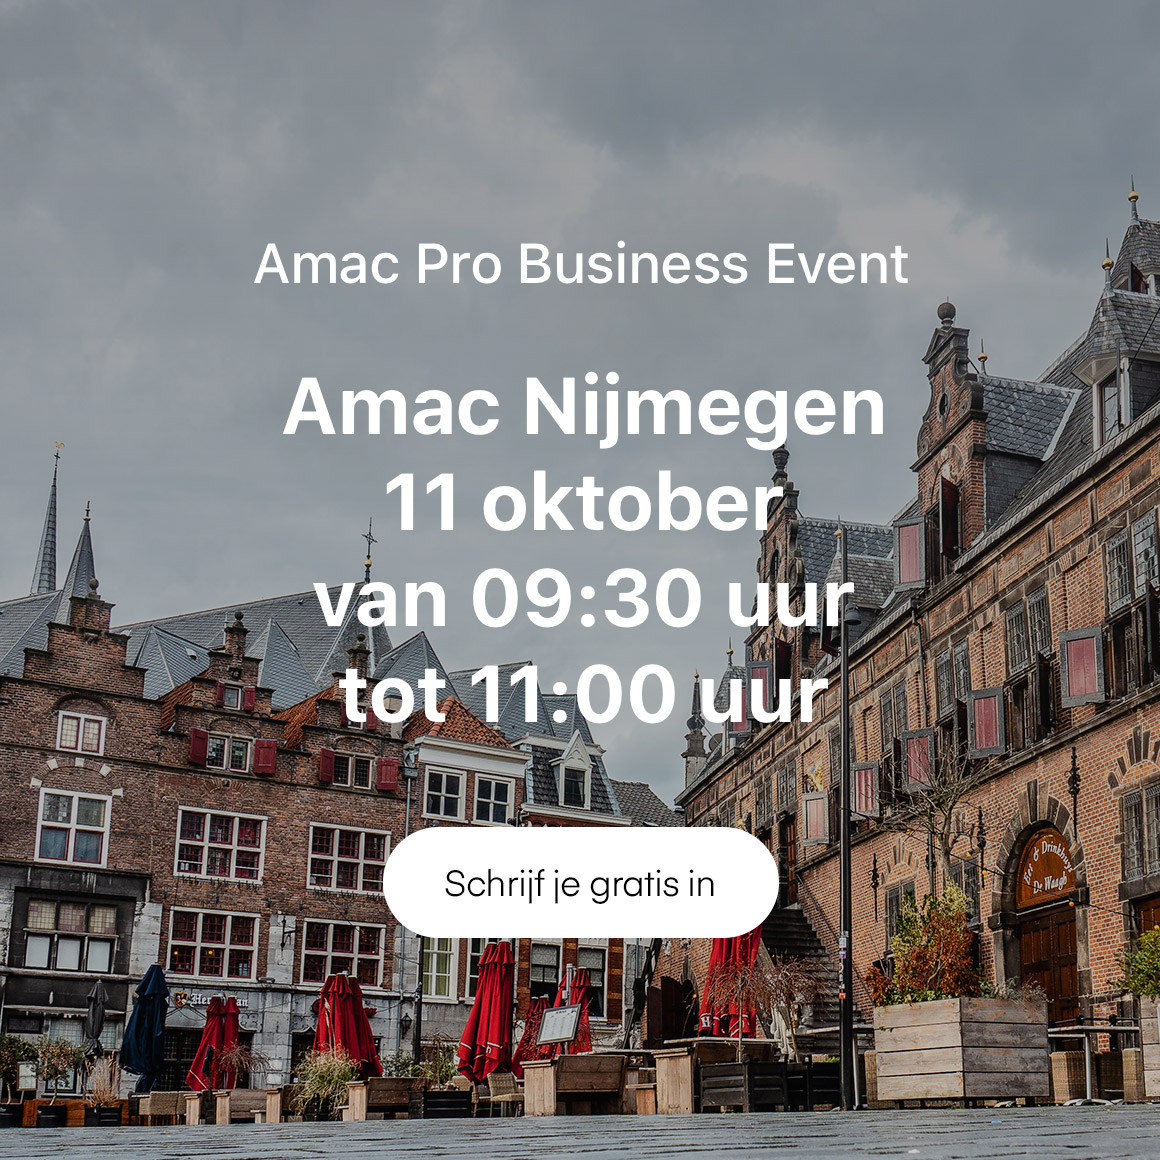 Amac Pro Business Event Nijmegen